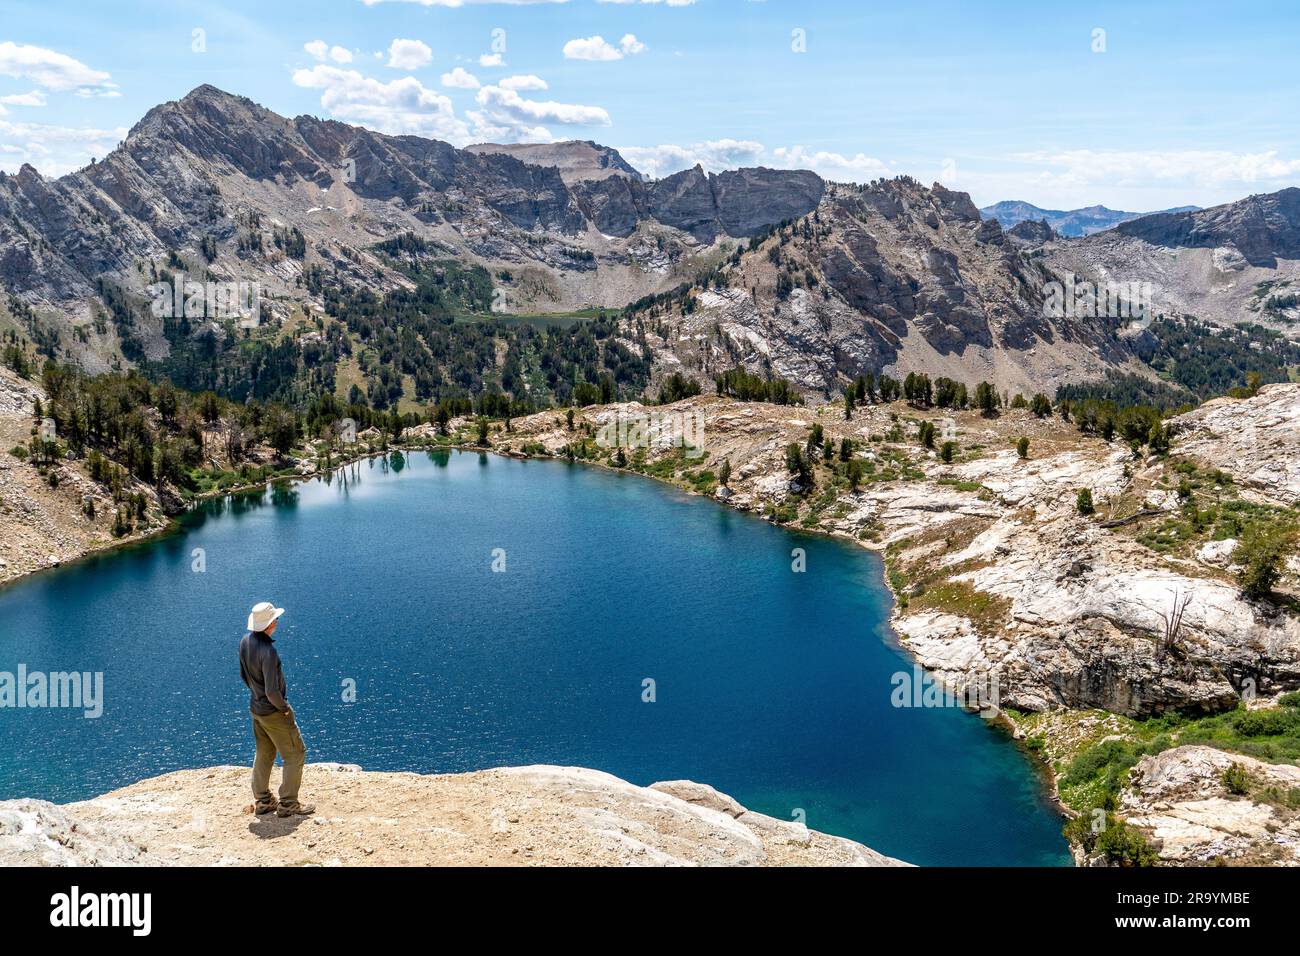 Hombre, excursionista, de pie, viendo una escena de un lago alpino y montañas escarpadas con árboles, rocas y nubes hinchadas en el cielo azul, Liberty Lake, Ruby Foto de stock